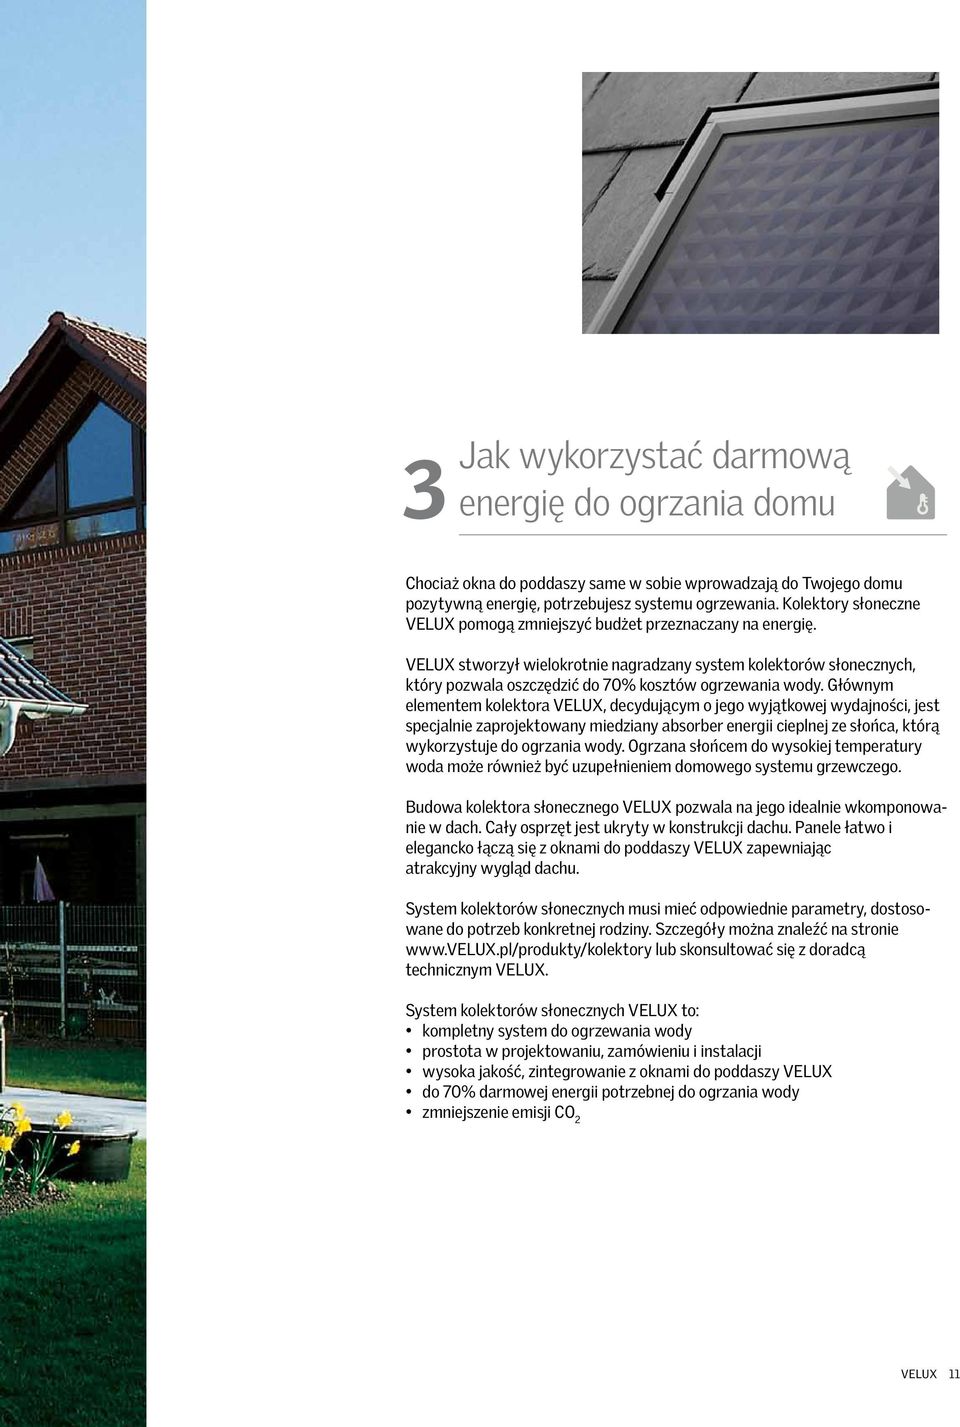 VELUX stworzył wielokrotnie nagradzany system kolektorów słonecznych, który pozwala oszczędzić do 70% kosztów ogrzewania wody.